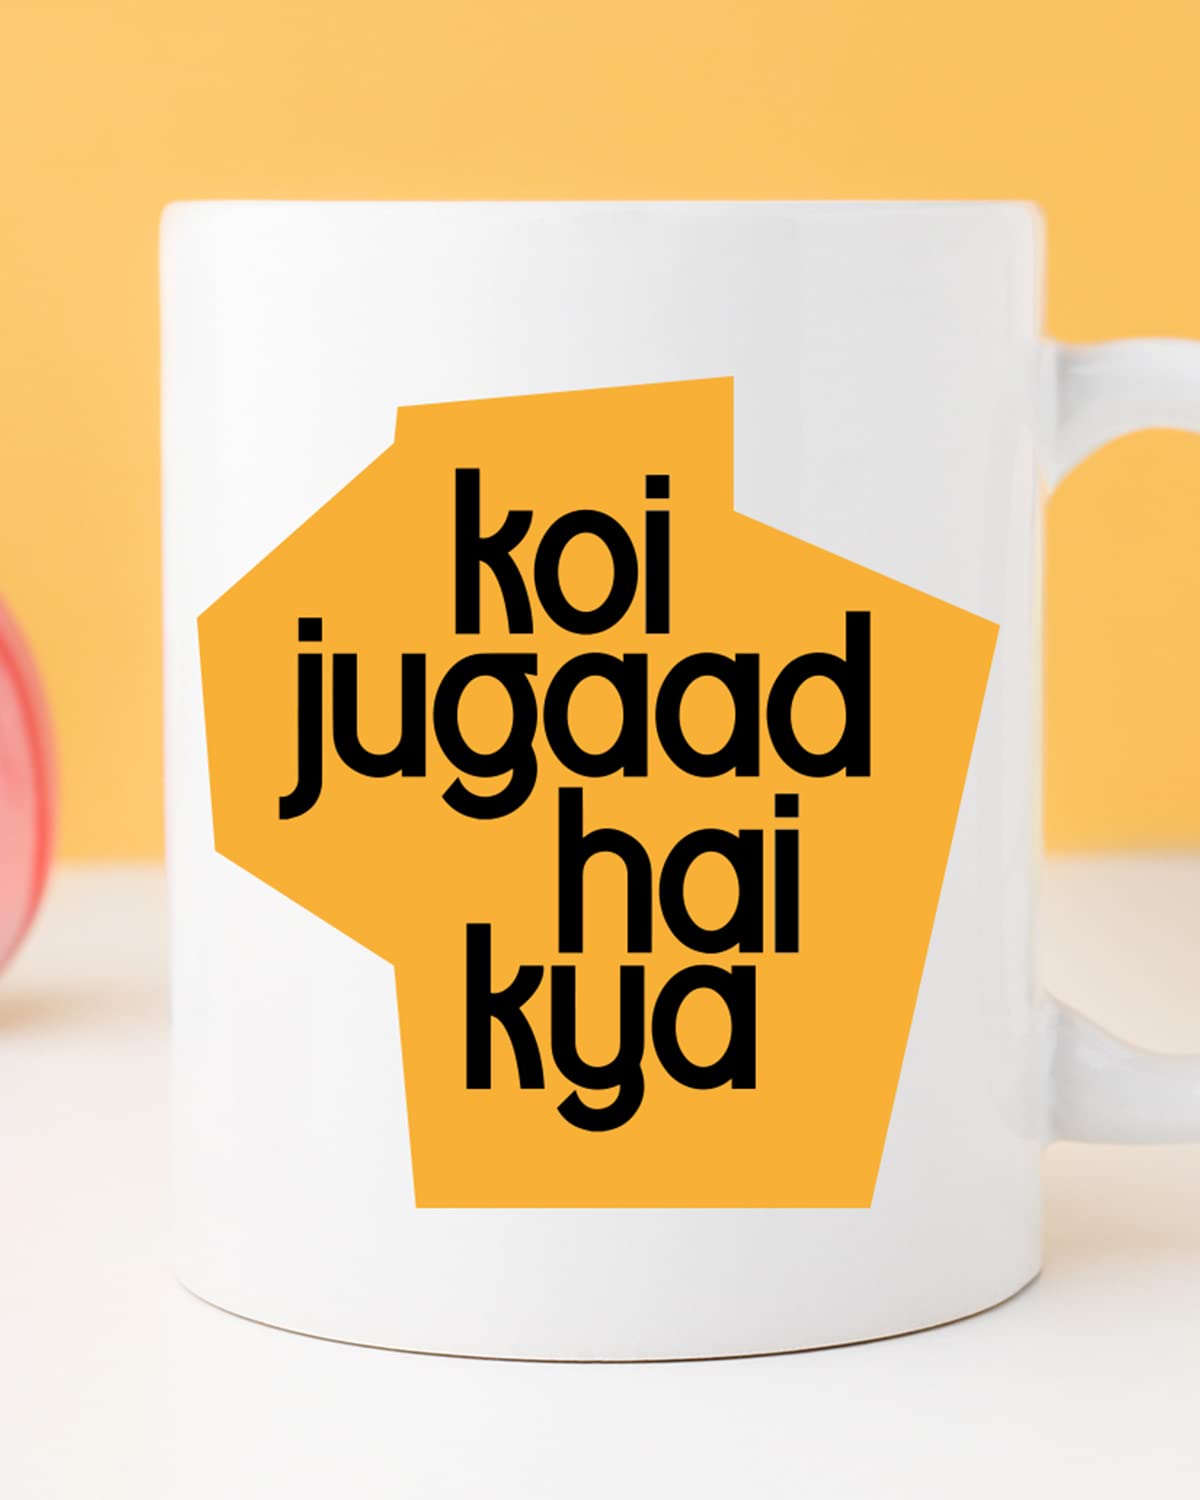 KOI JUGAAD HAI Kya Coffee Mug - Gift for Friend, Birthday Gift, Birthday Mug, Motivational Quotes Mug, Mugs with Funny & Funky Dialogues, Bollywood Mugs, Funny Mugs for Him & Her